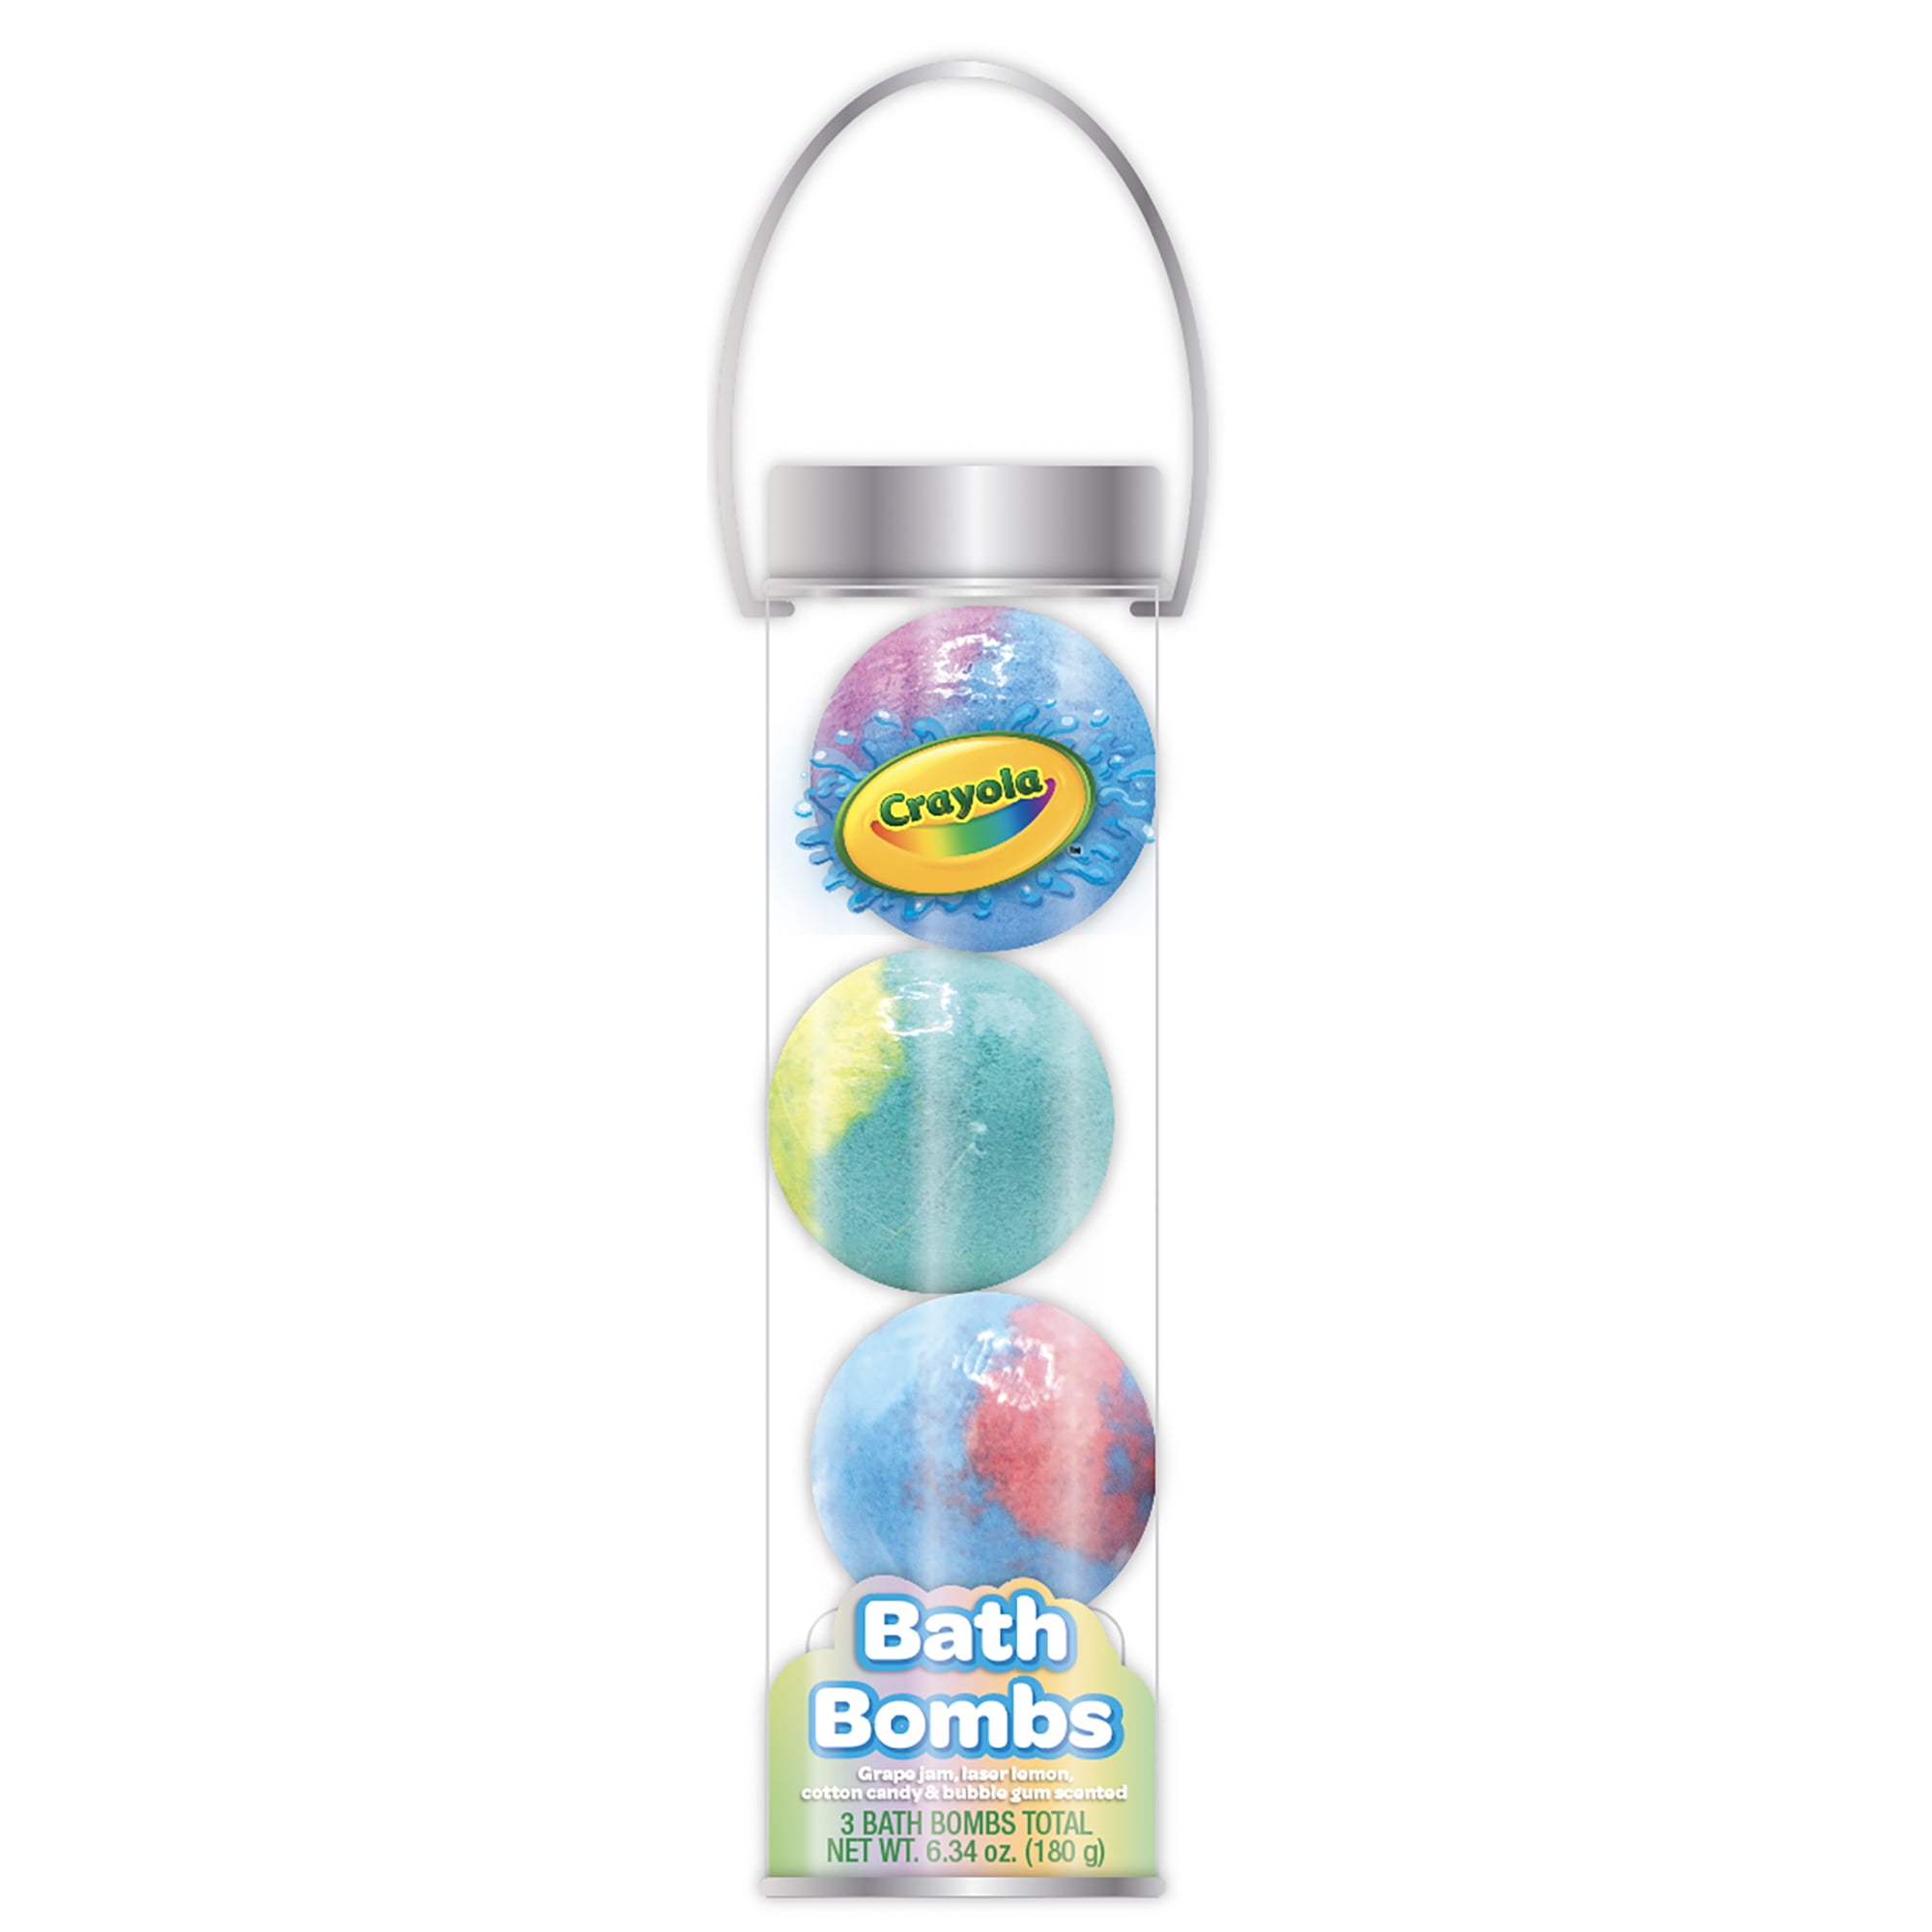 Crayola Cylindar Bath Bombs, Grape Jam, Laser Lemon, Cotton Candy & Bubble Gum Scented, 6.34 oz; 3 Count